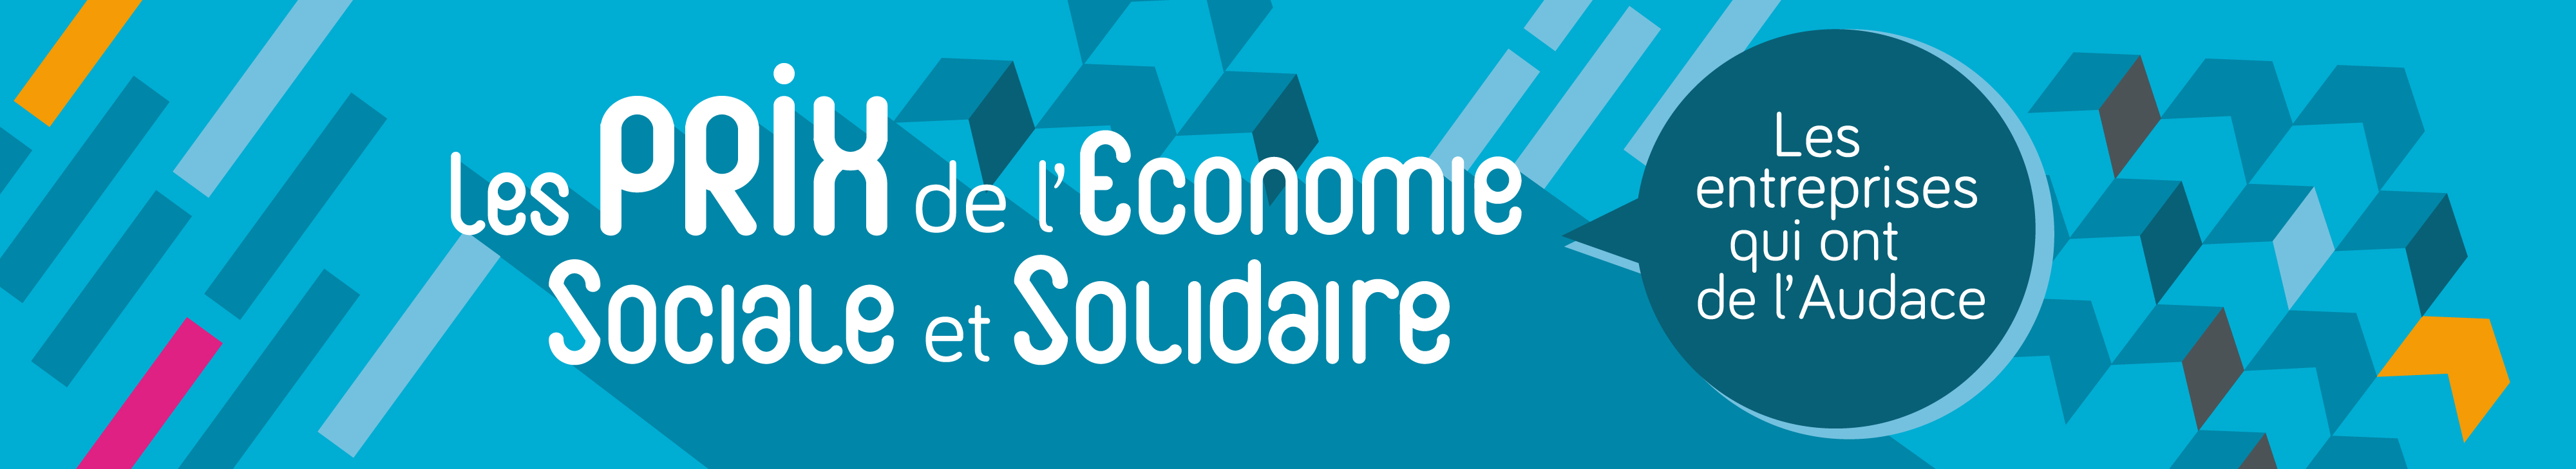 Le Prix de l'Economie Sociale et Solidaire - Les entreprises qui ont de l'audace